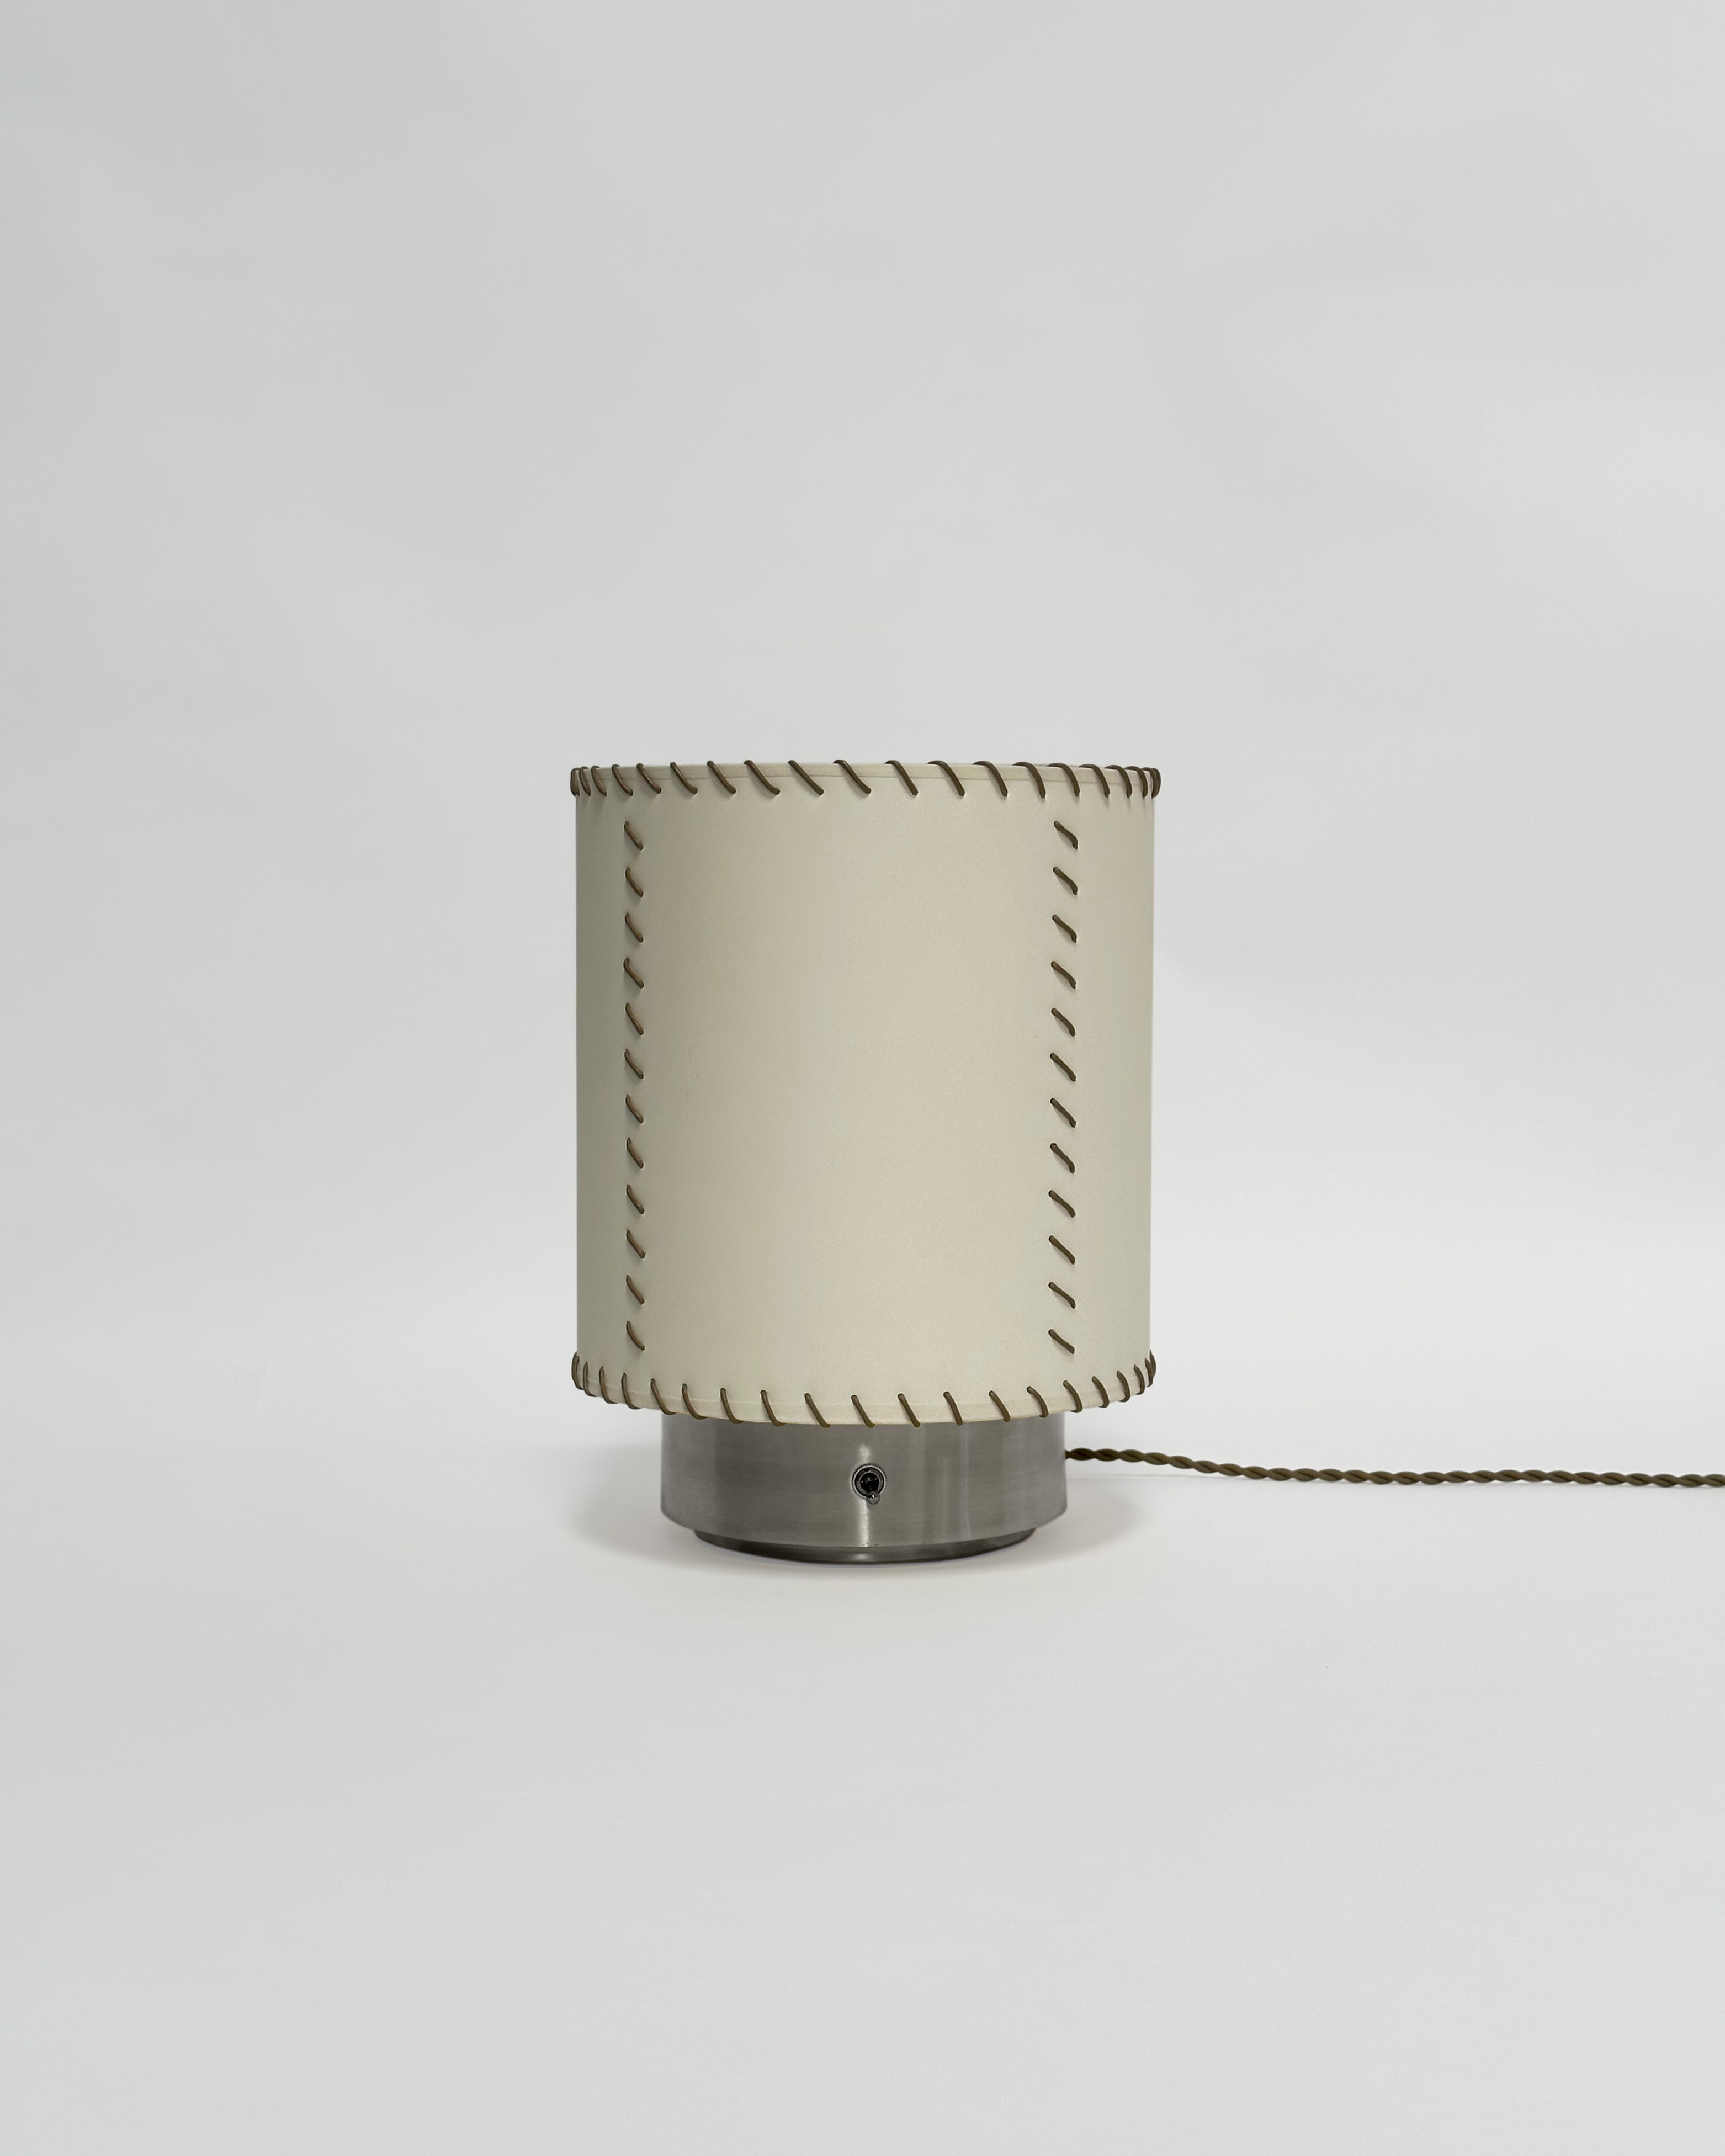 Atelier de Troupe - NEW – Pedregal Table Lamp